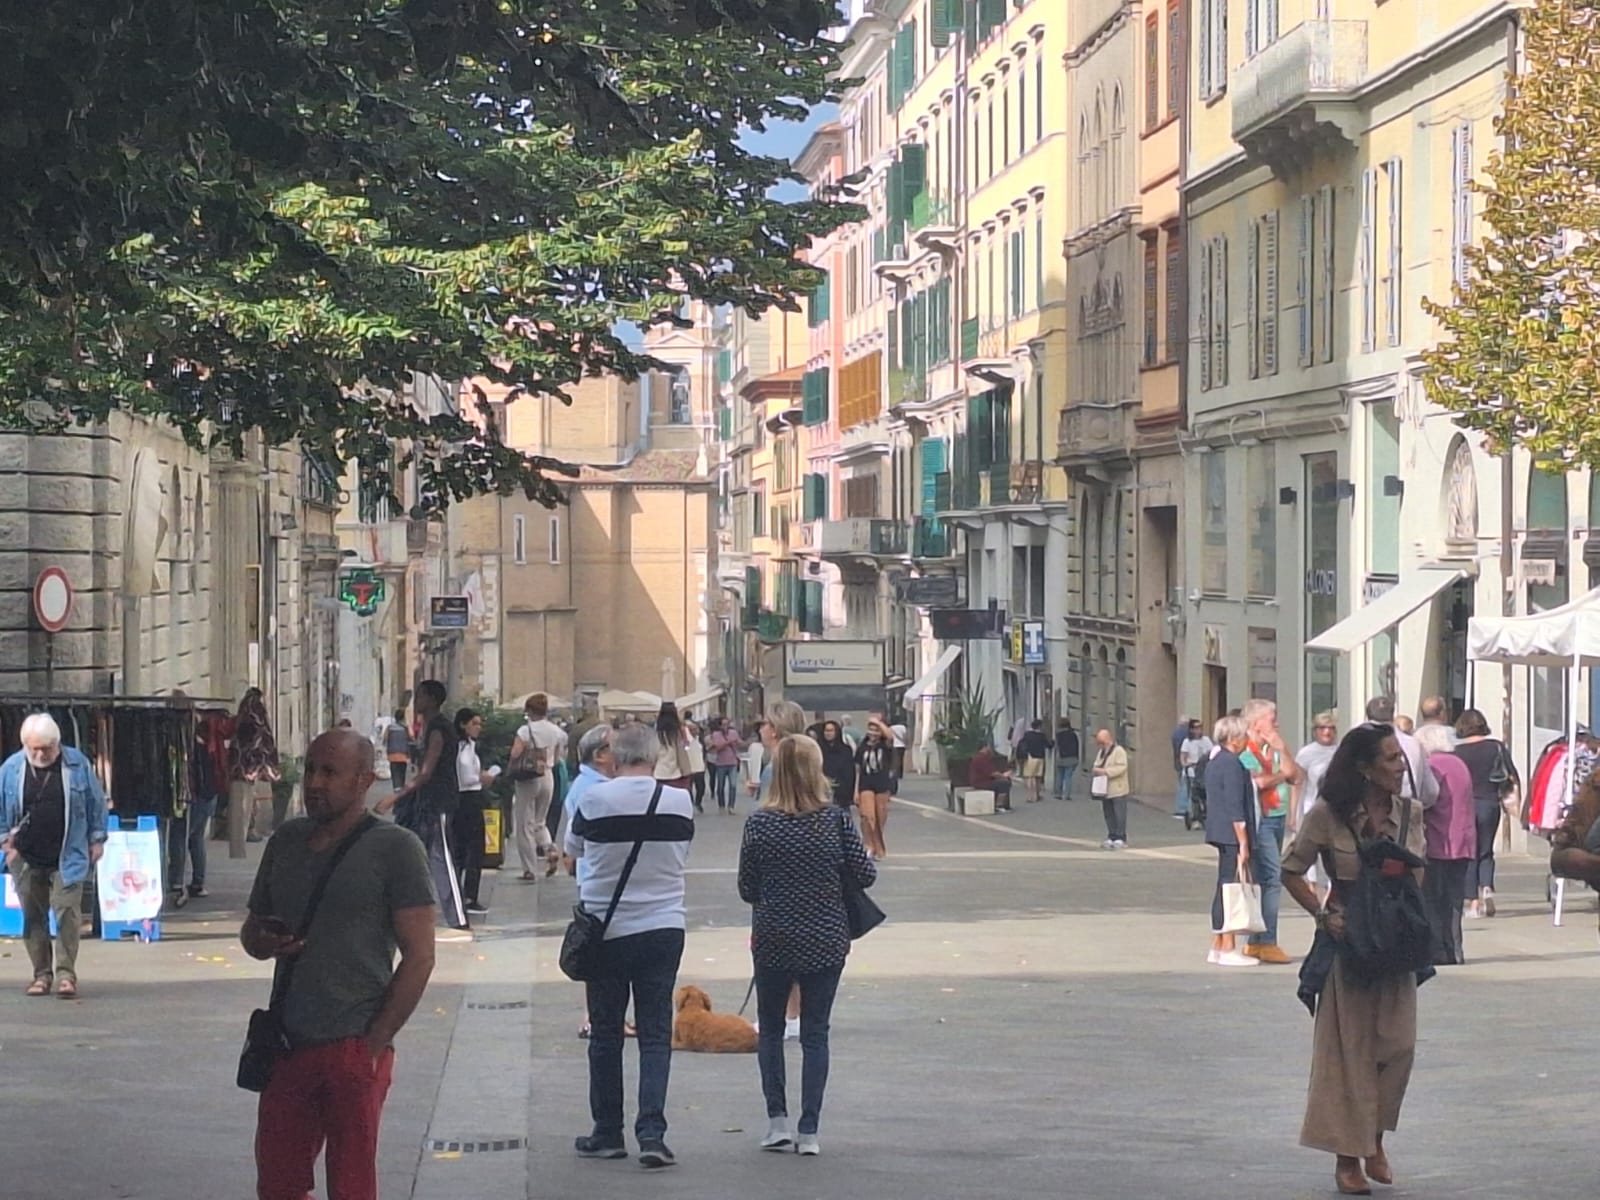 Ancona – La gente sulla politica: “Sfiduciati, lontani e scontenti”